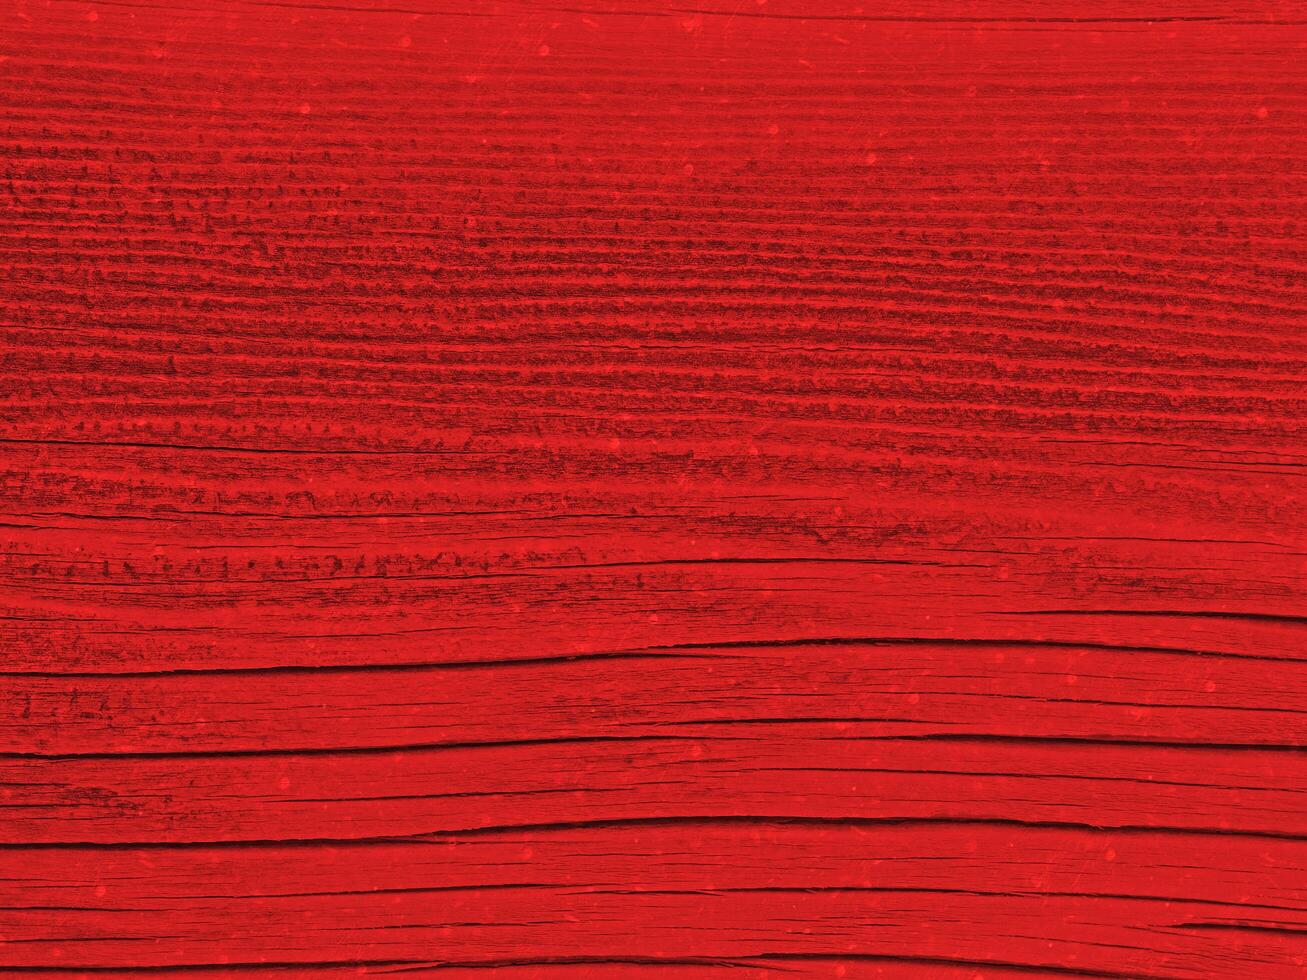 röd trä textur foto